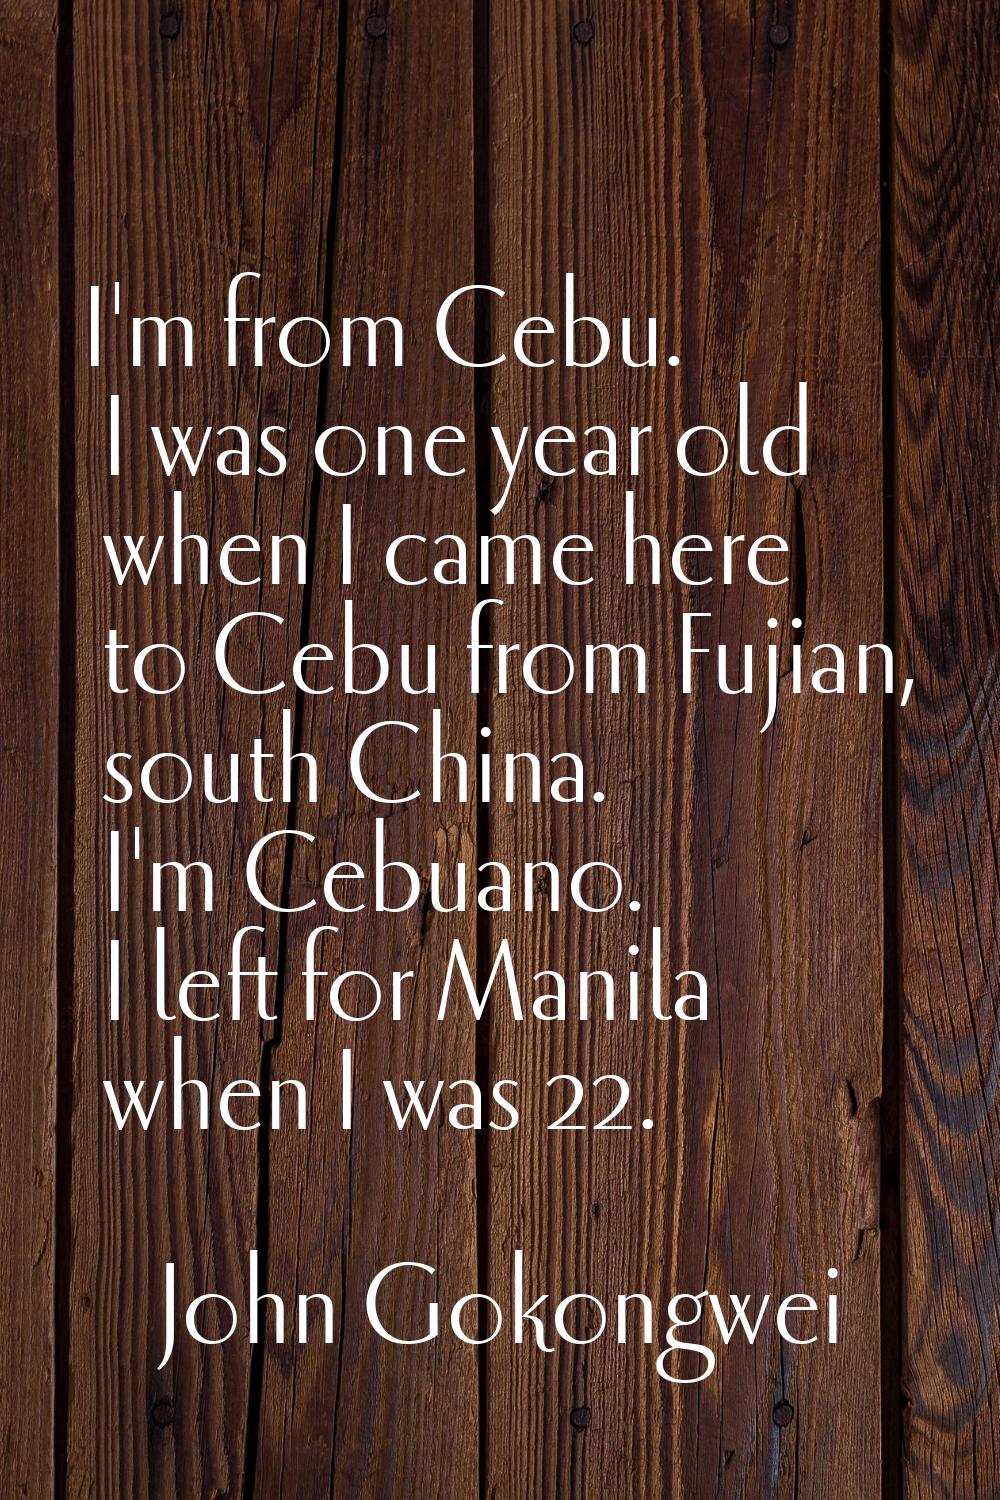 I'm from Cebu. I was one year old when I came here to Cebu from Fujian, south China. I'm Cebuano. I